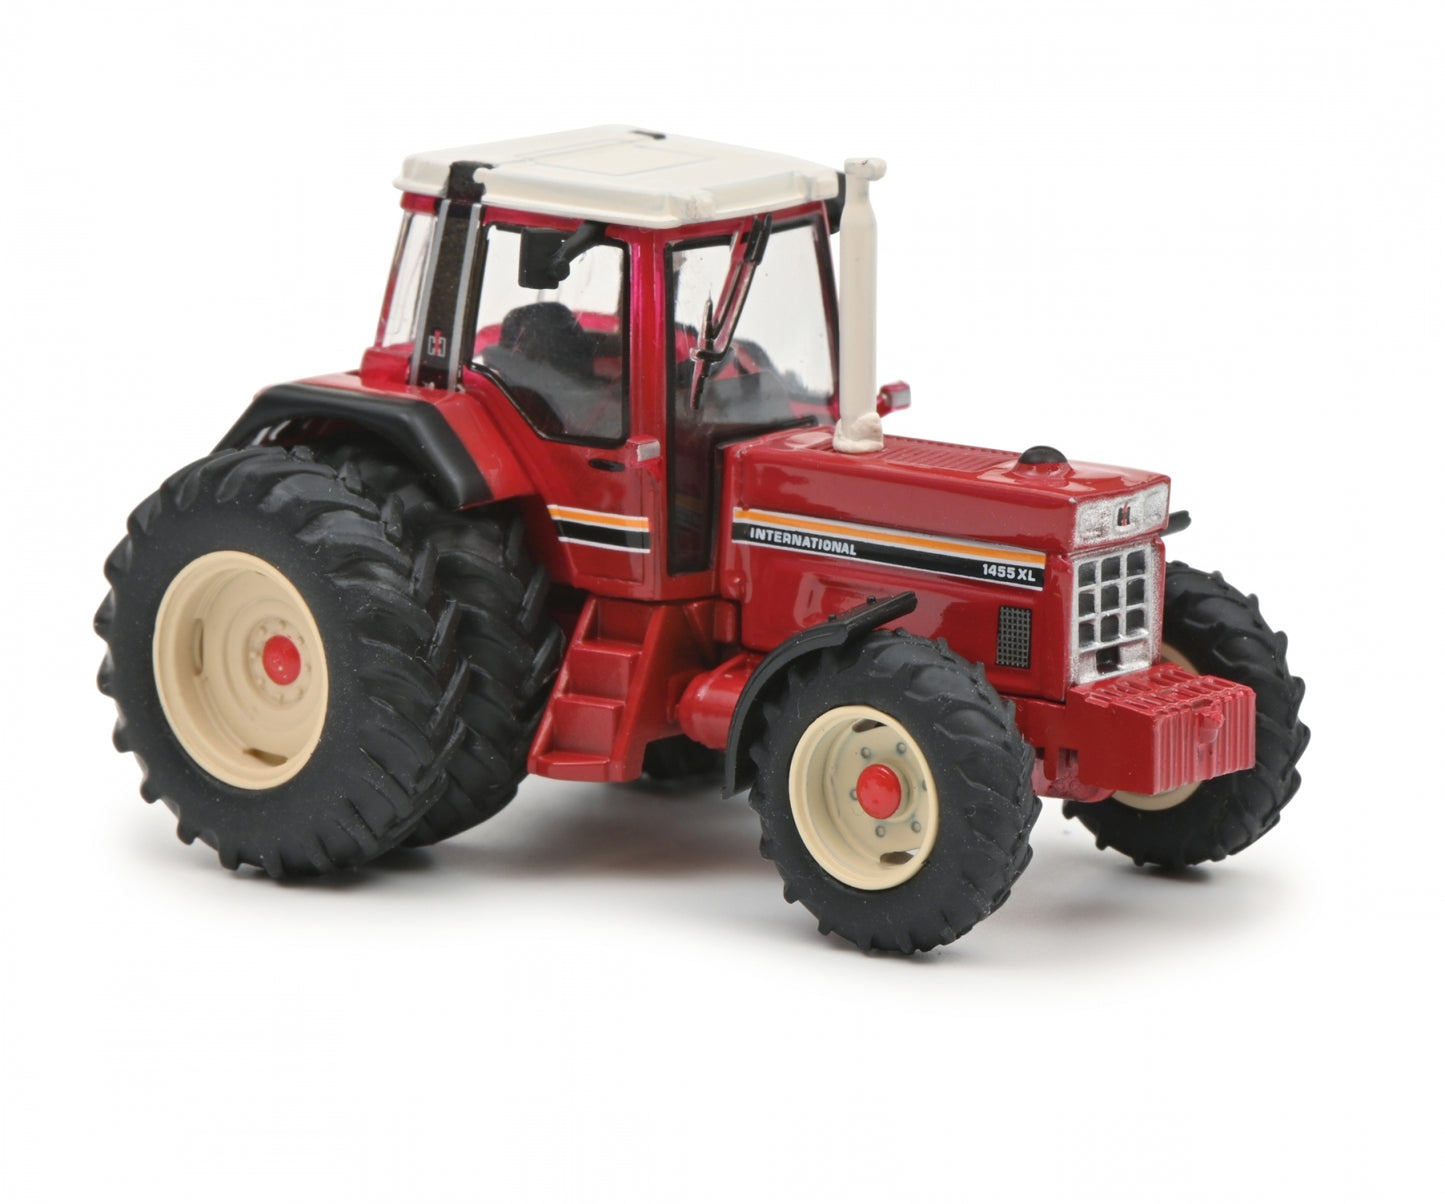 Schuco 1:87 IHC 1455 XL tractor 452669700